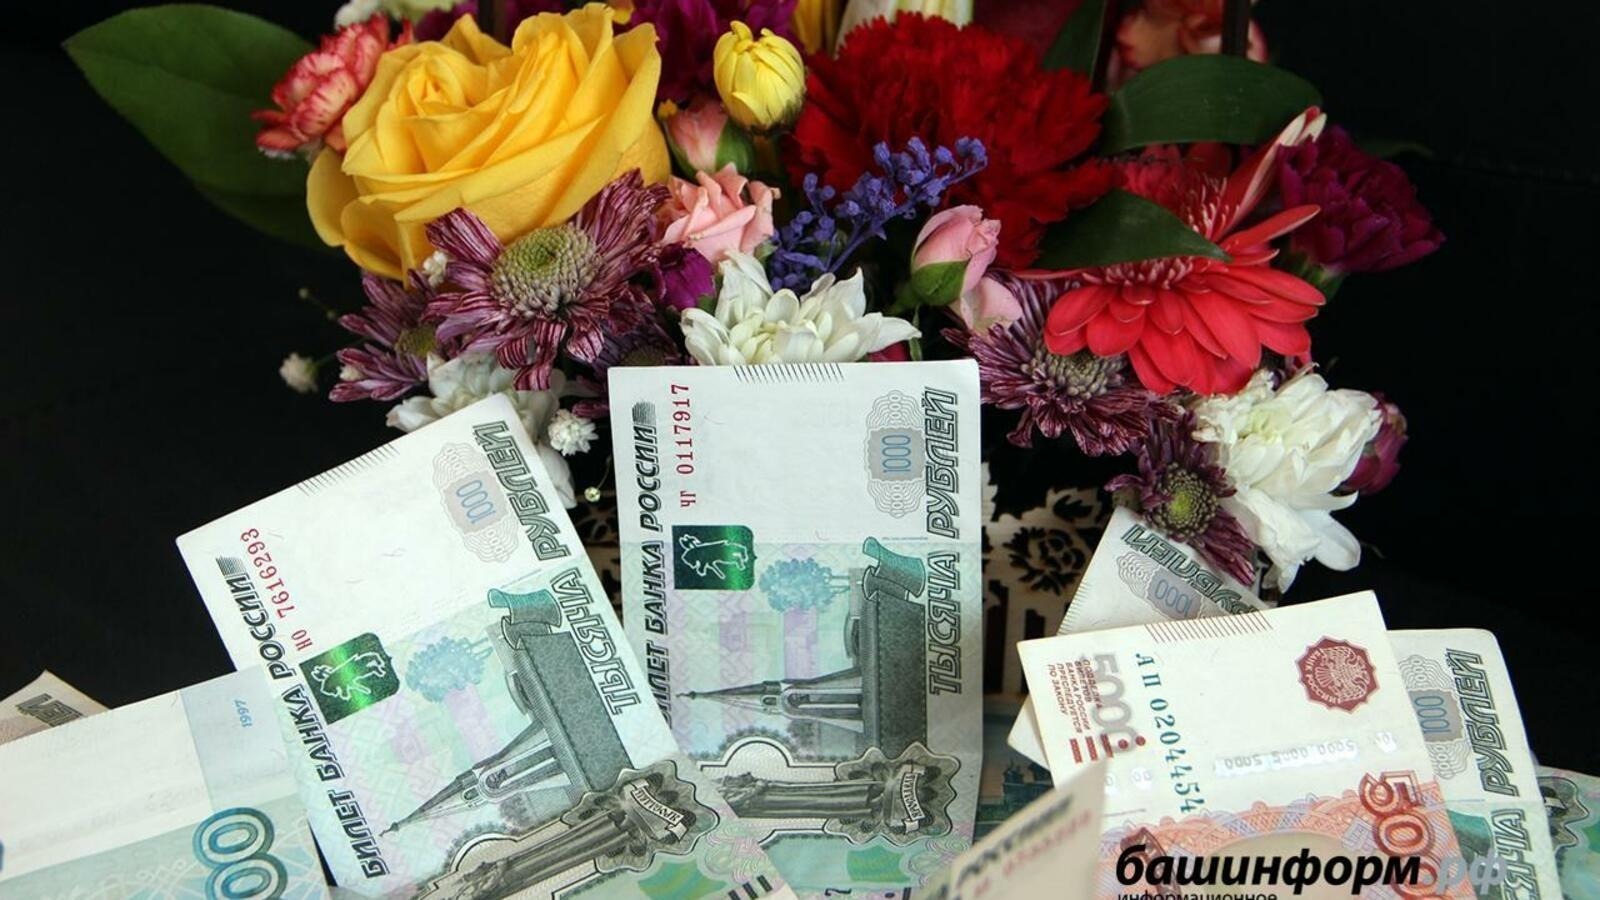 Башкирия получила поддержку Президентского фонда культурных инициатив в размере 16 млн рублей